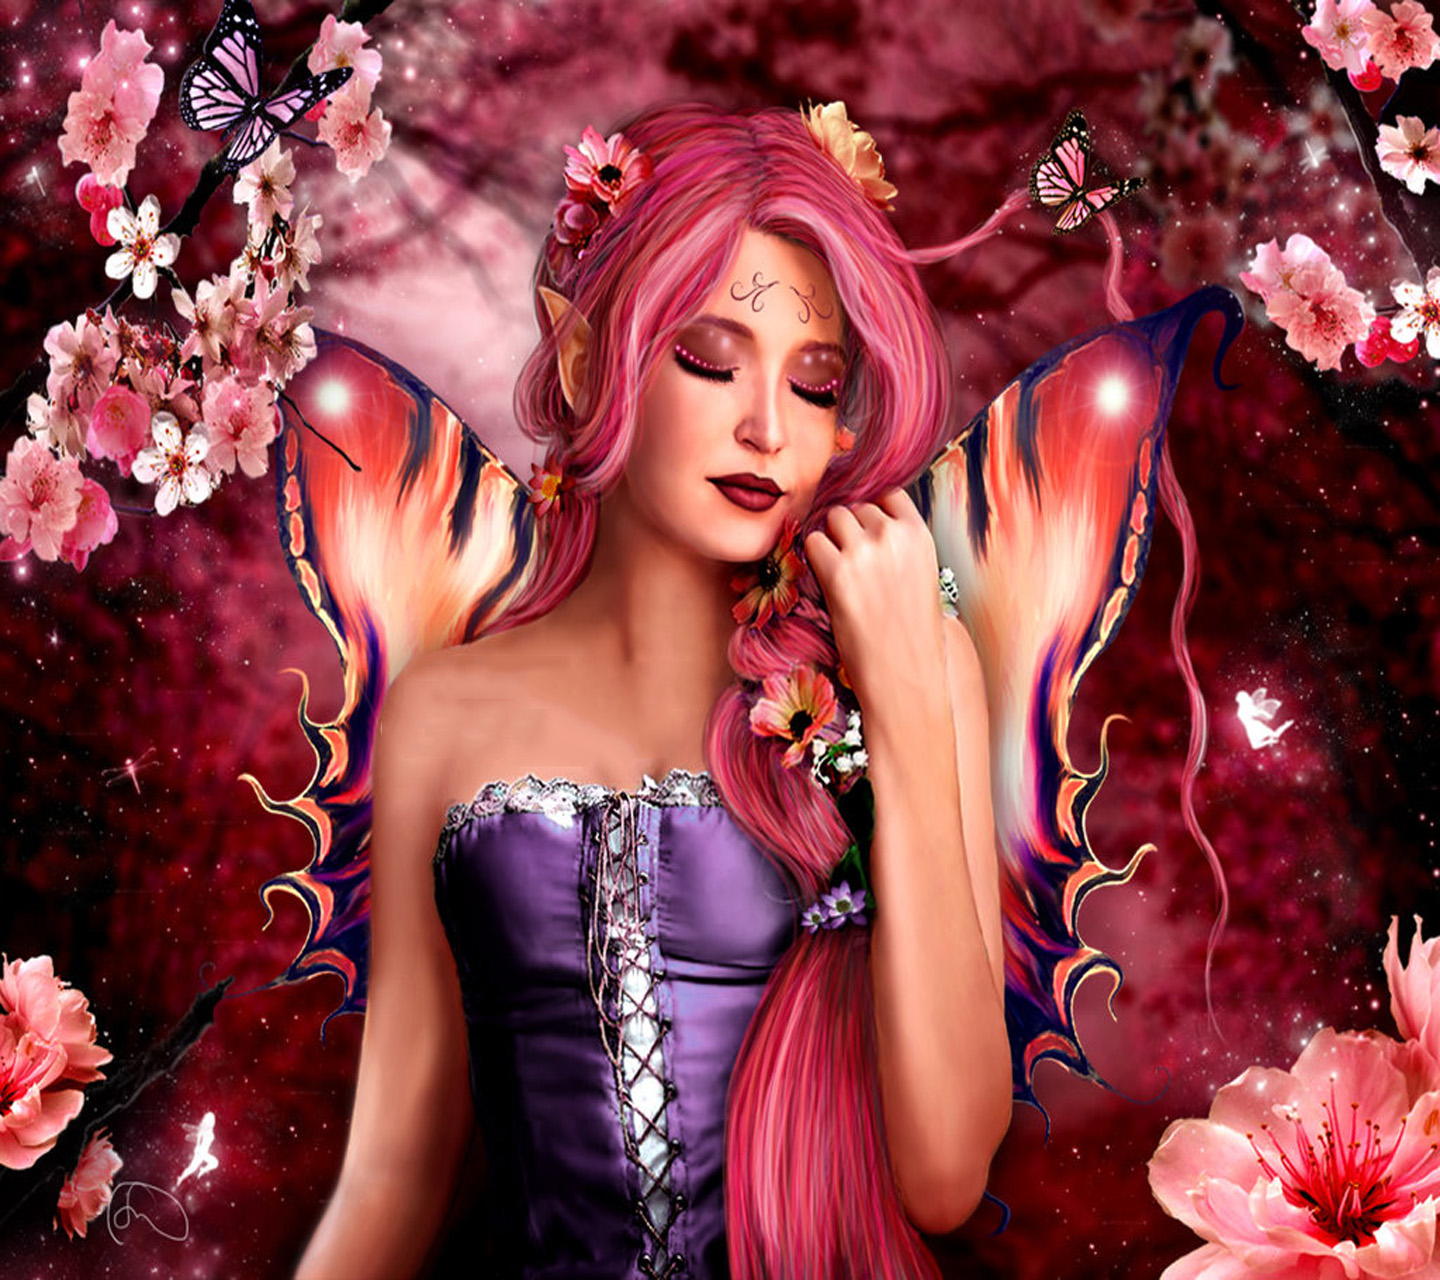 Fairy Butterfly - 1440x1280 Wallpaper 